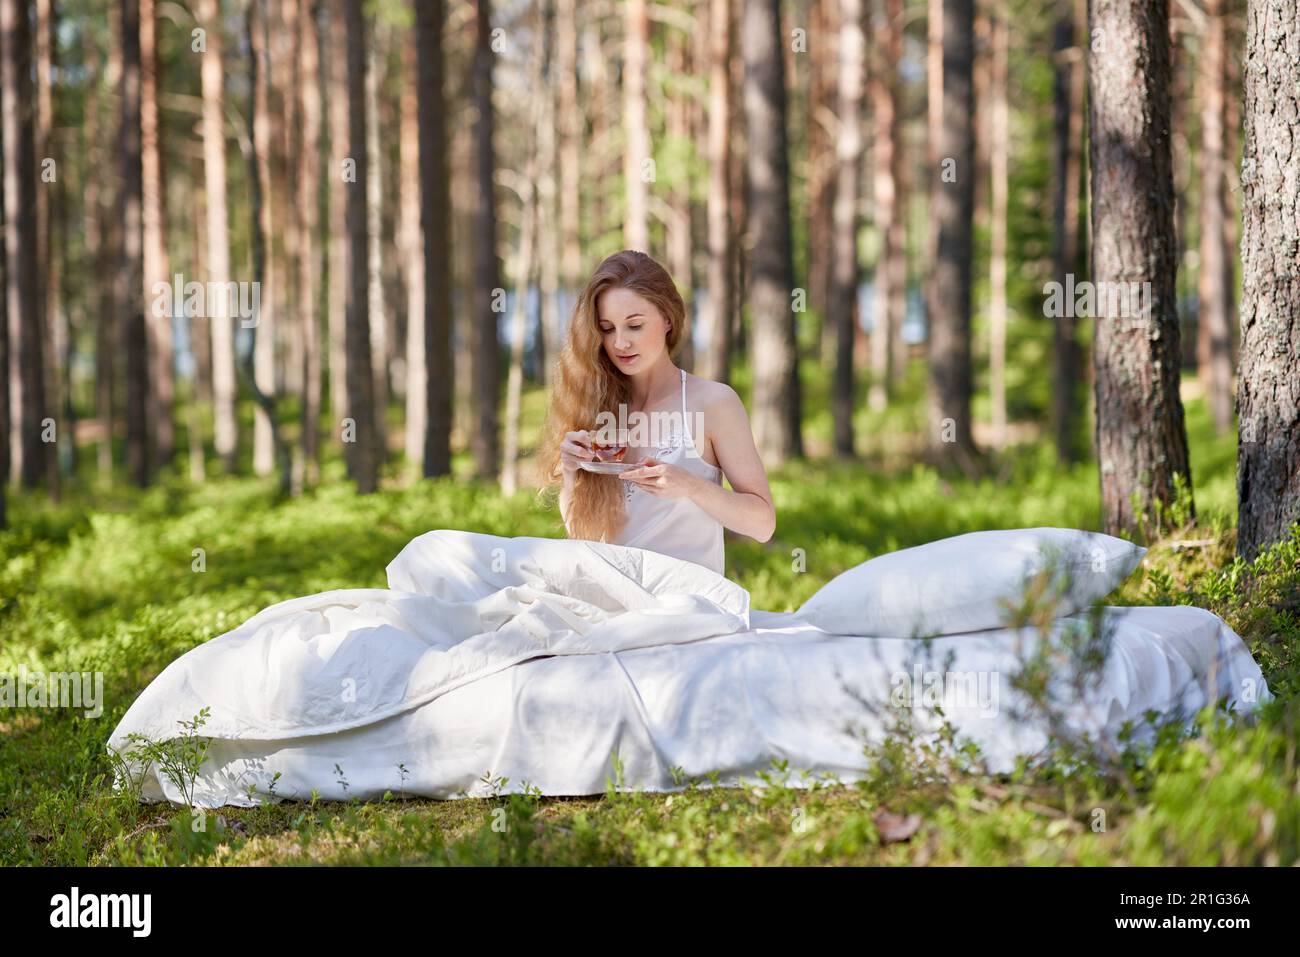 Une femme se réveille dans une forêt d'été. Une fille boit le thé du matin assis sur un matelas dans les bois Banque D'Images